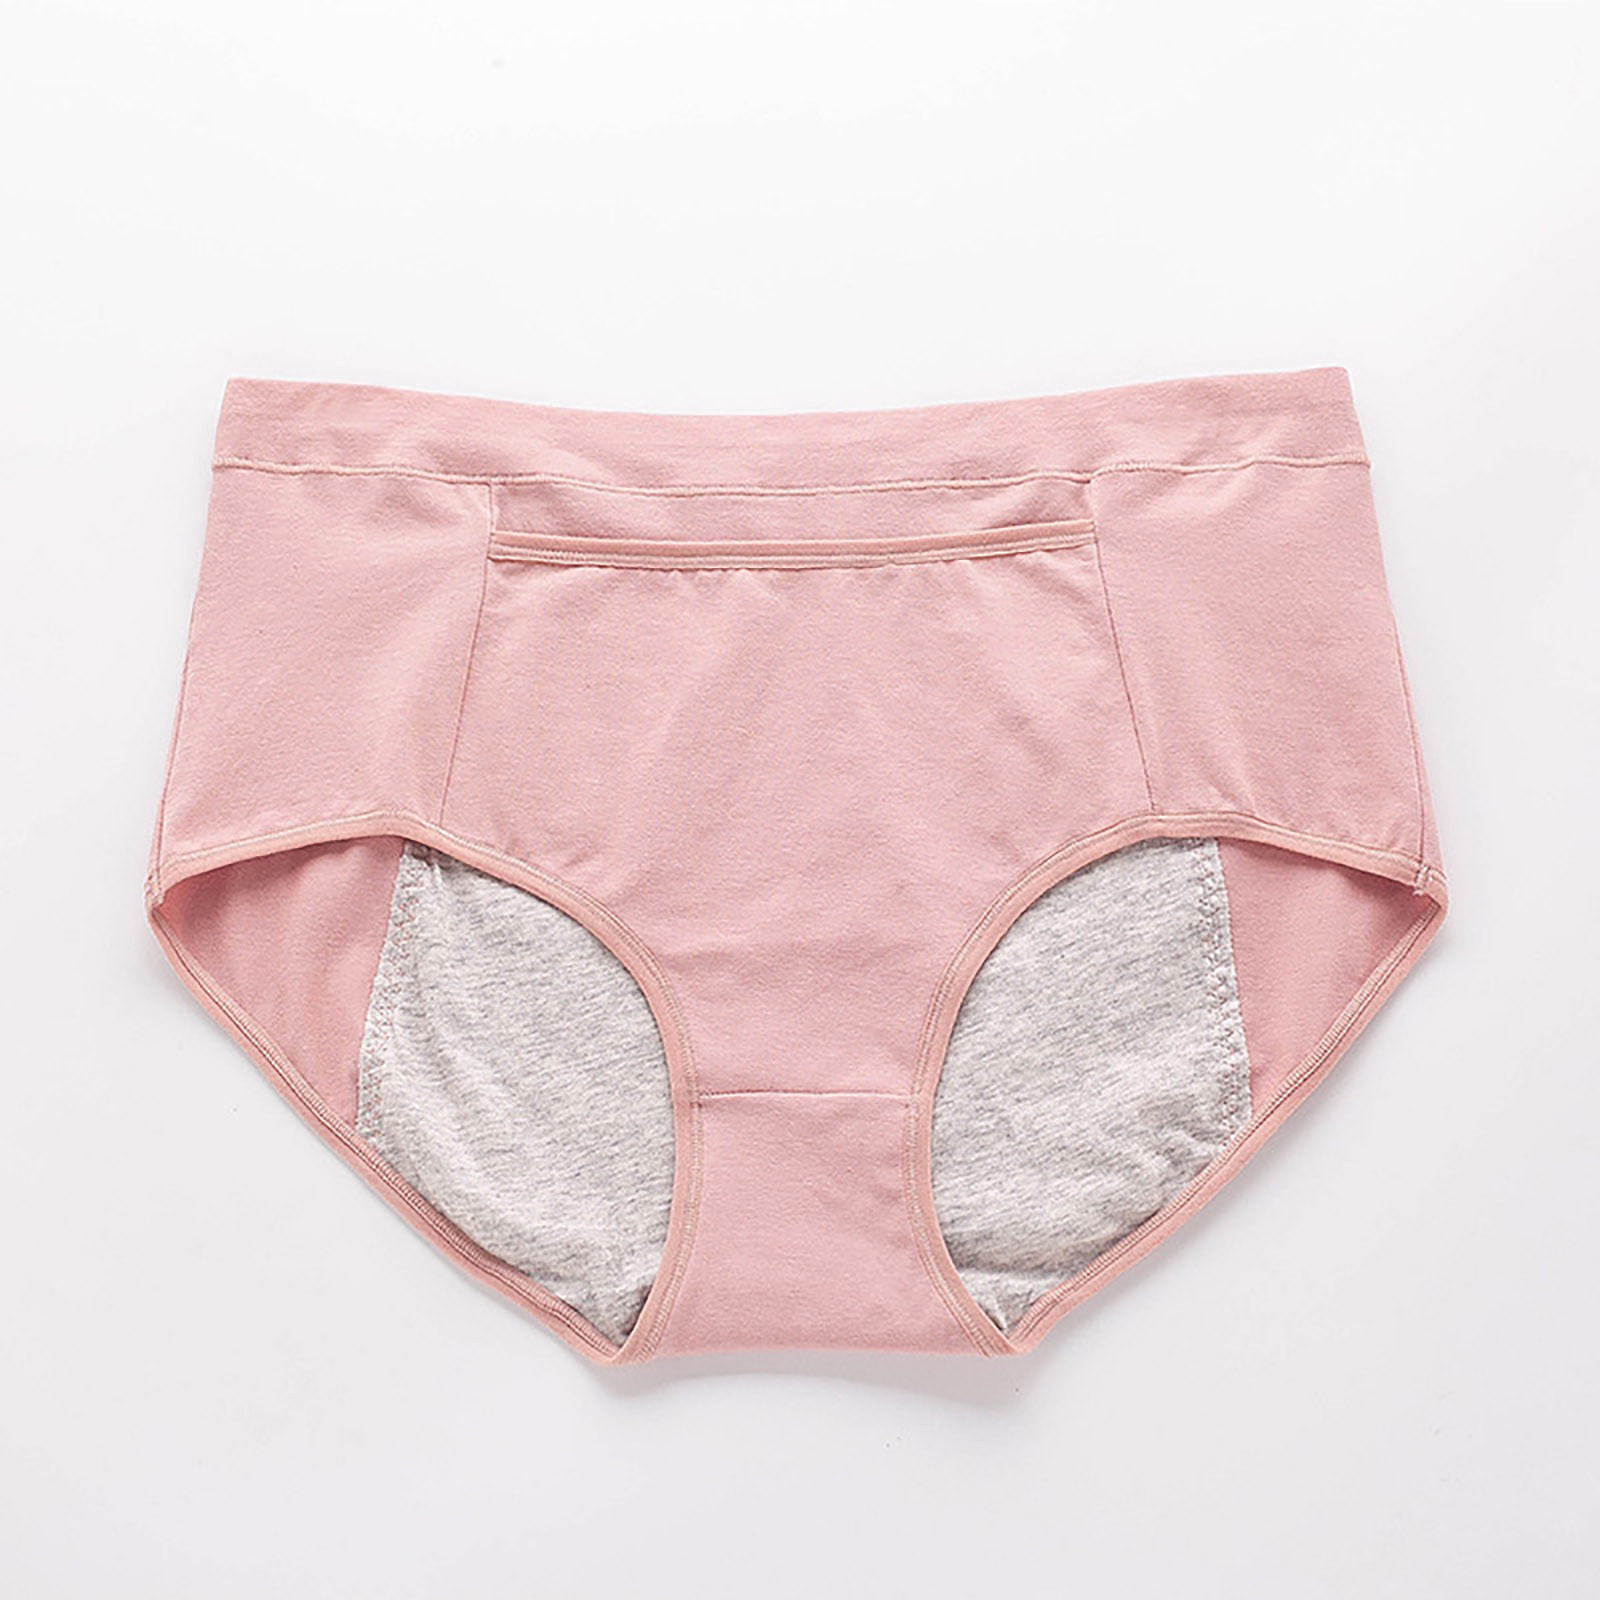 Ichuanyi Women's Large Underwear Medium High Waist Middle-Aged Underwear - image 1 of 3